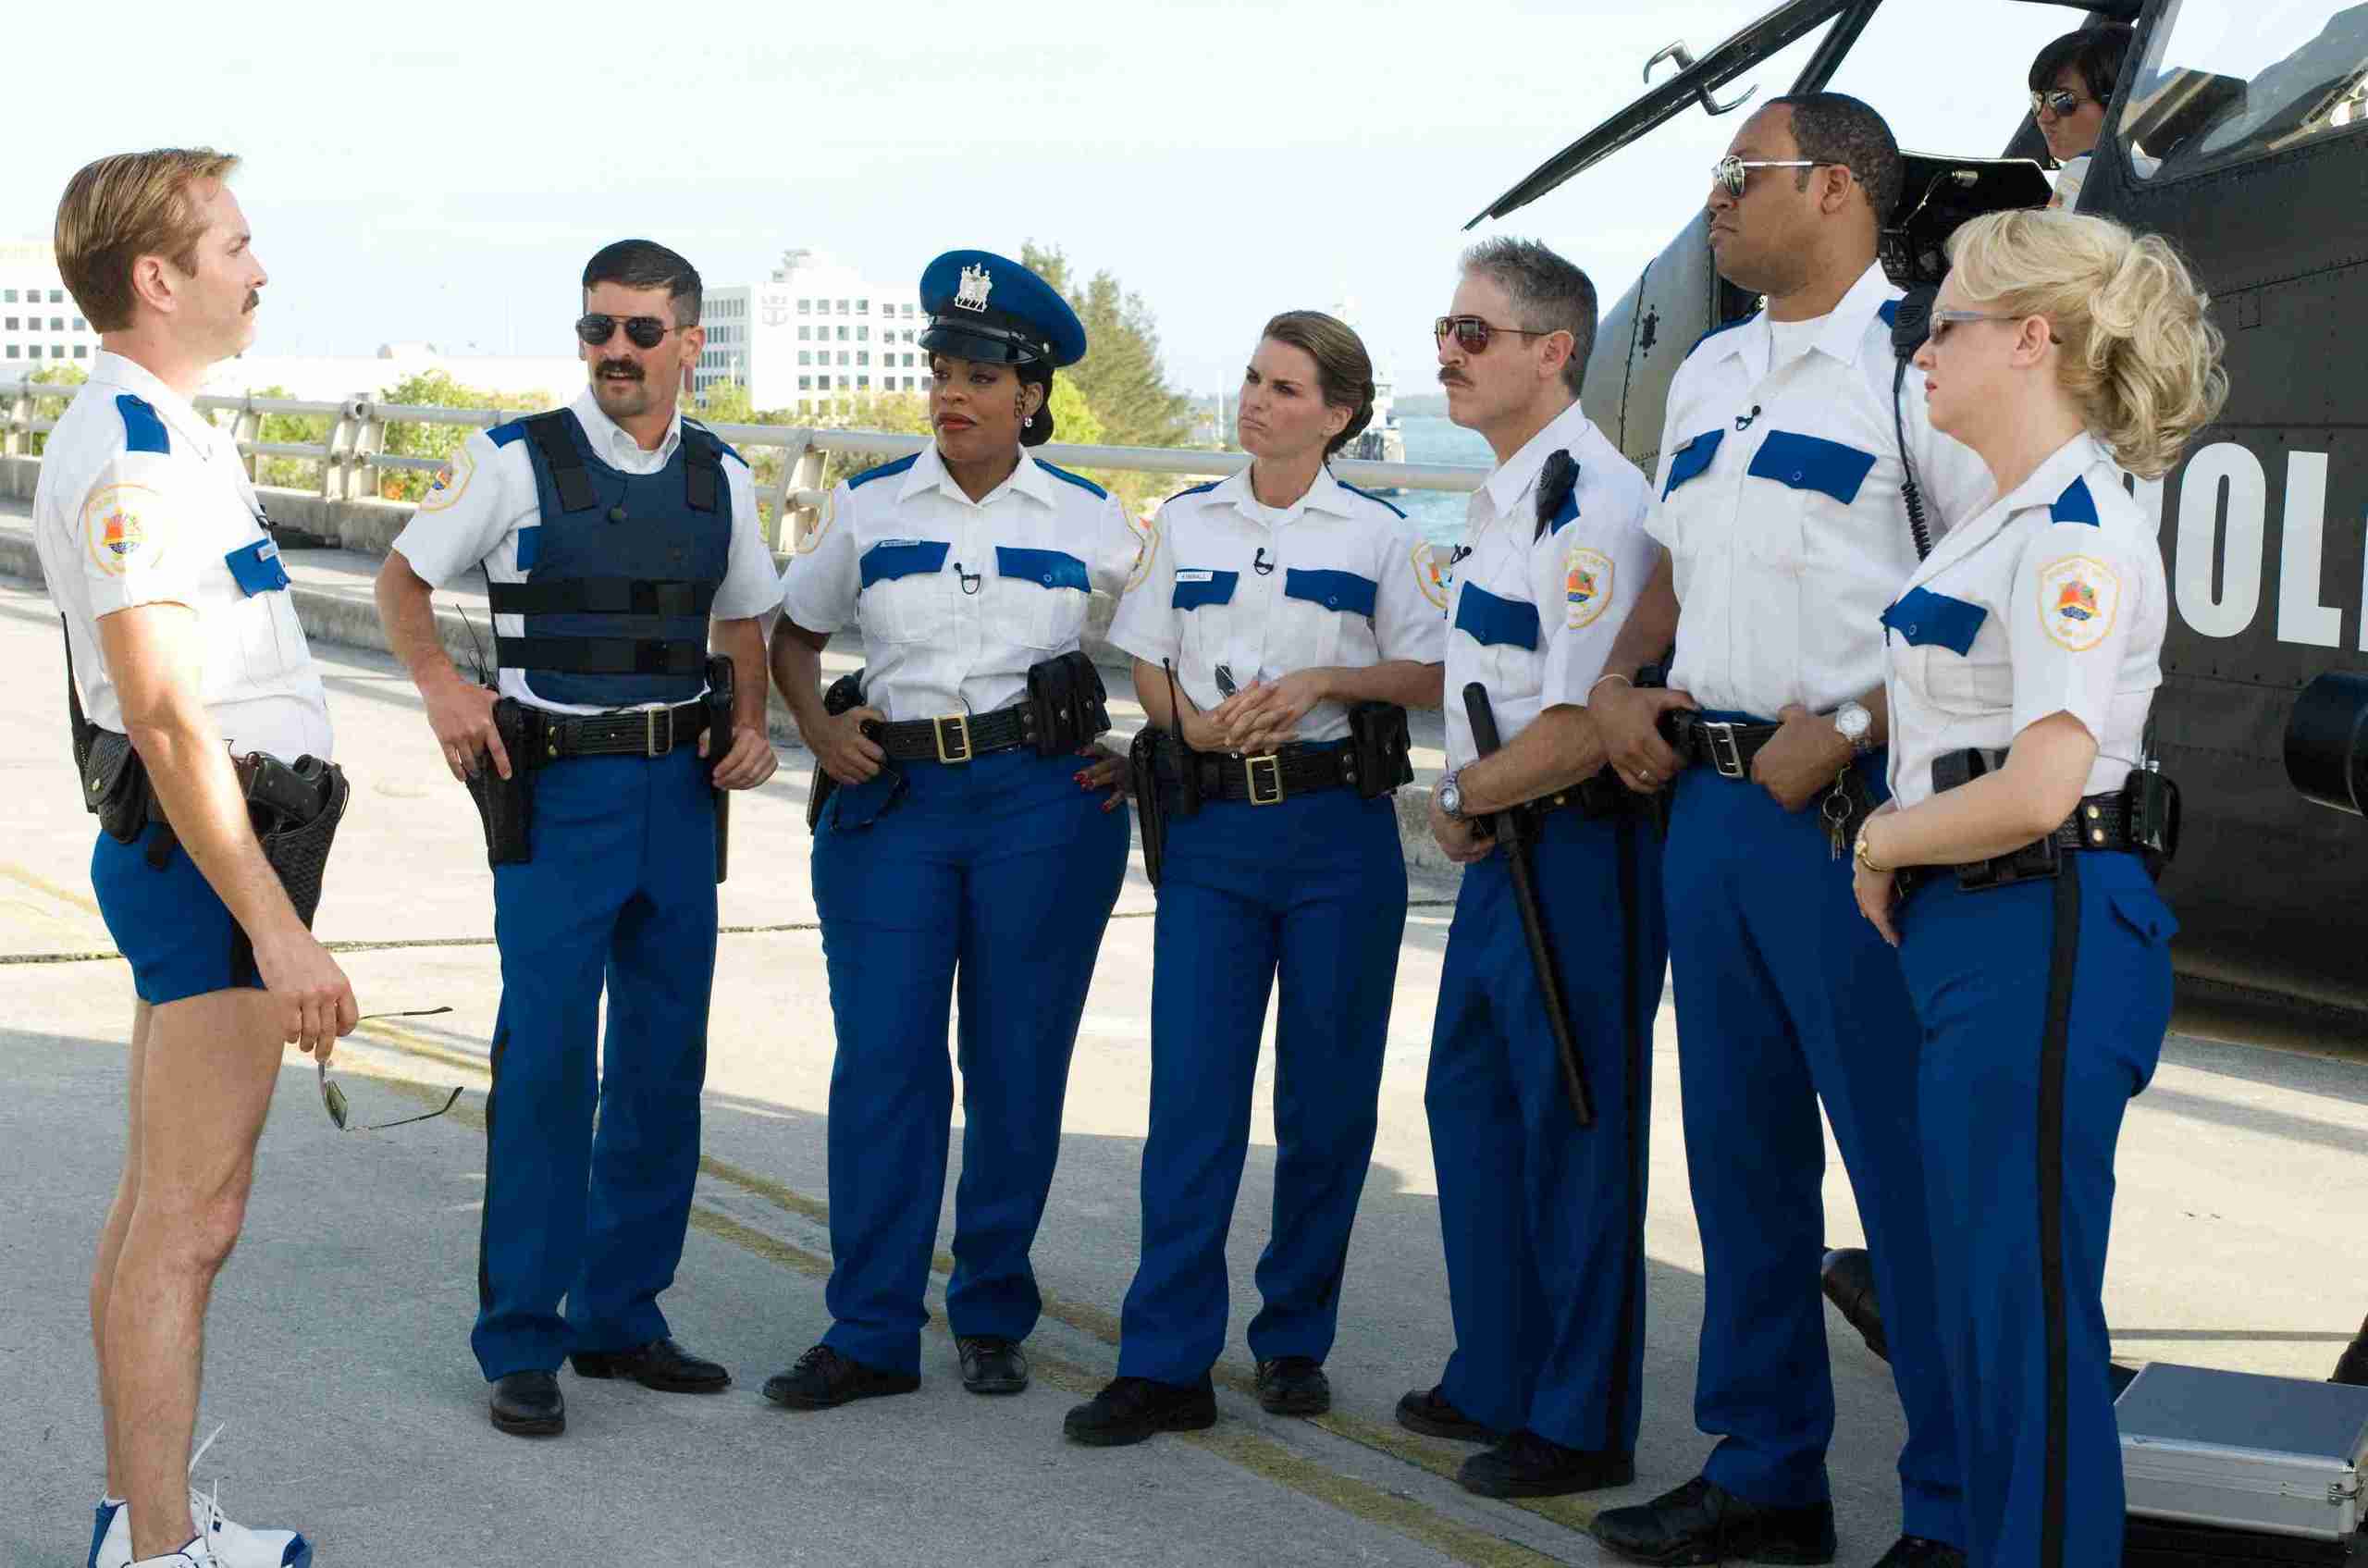 Reno 911!: Miami 2007 - Full Cast Crew - IMDb